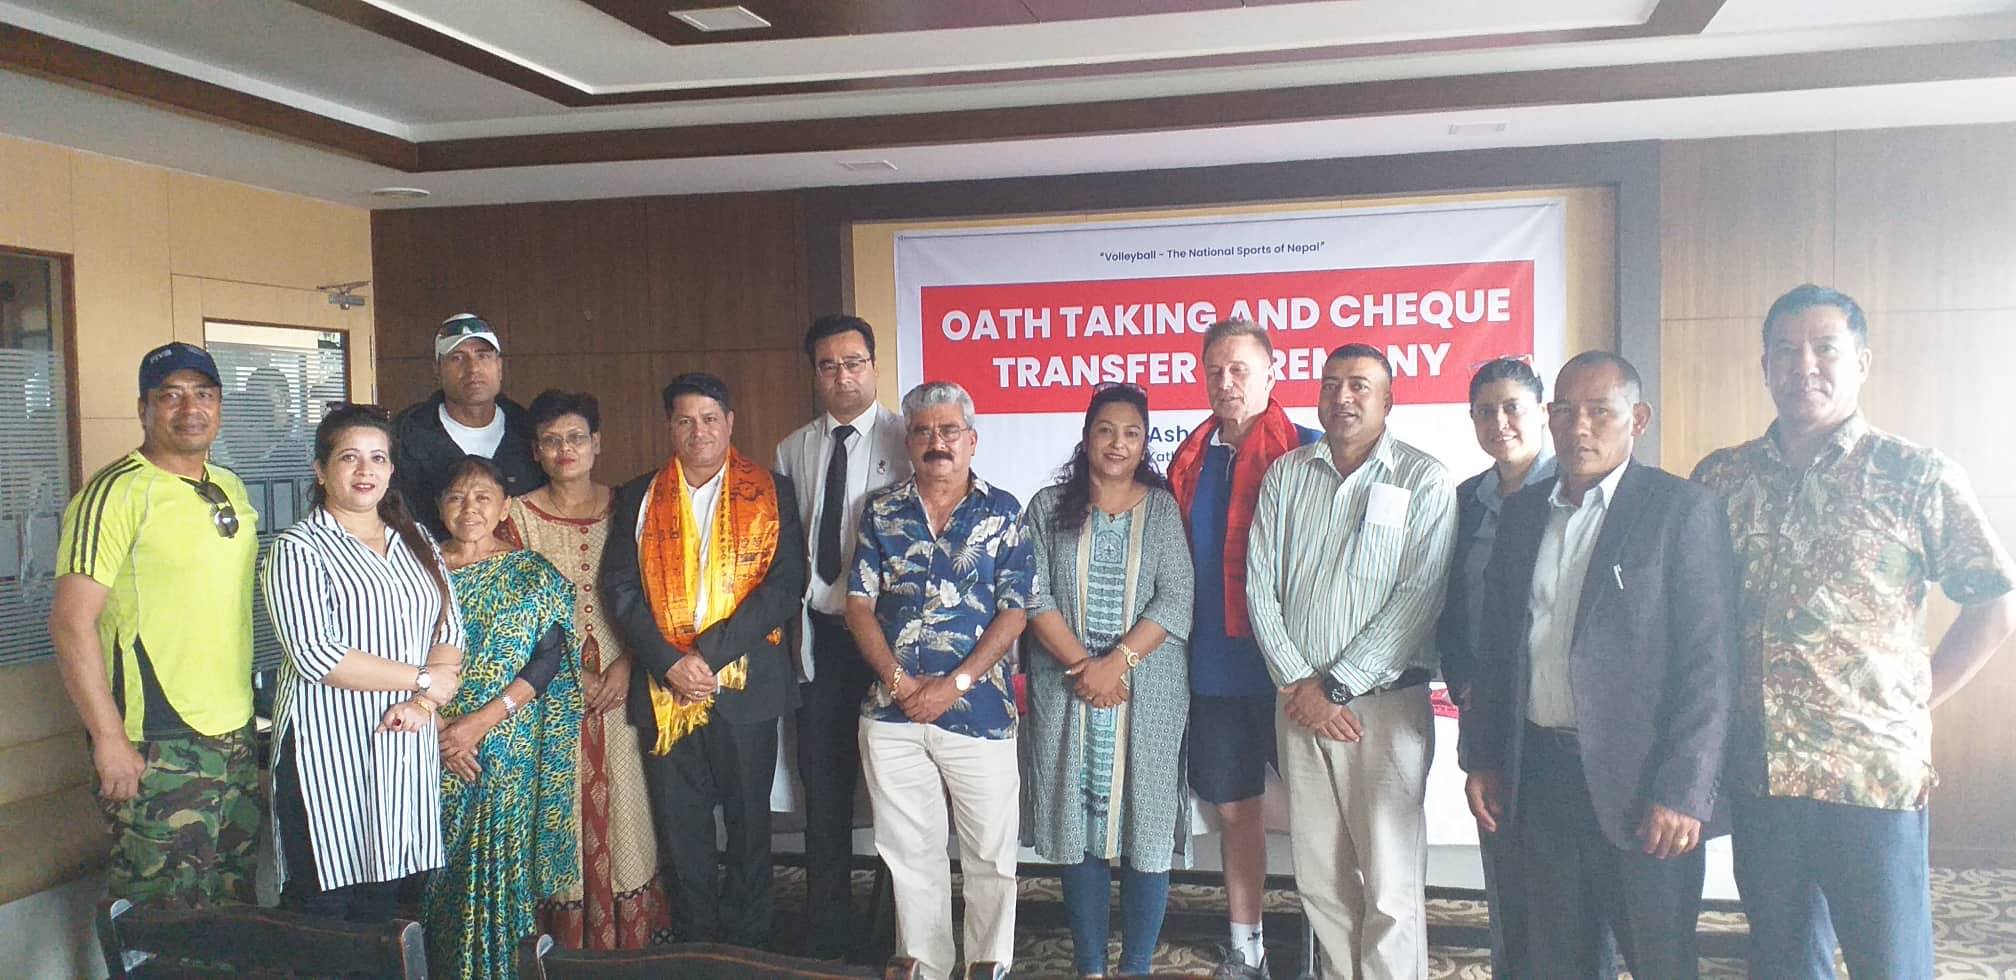 नेपाल भलिबल संघका उपाध्यक्ष सुवेदीले लिए सपथ, एभीसी सेन्ट्रल जोनका लागि ढोरपाटनको सहयोग 